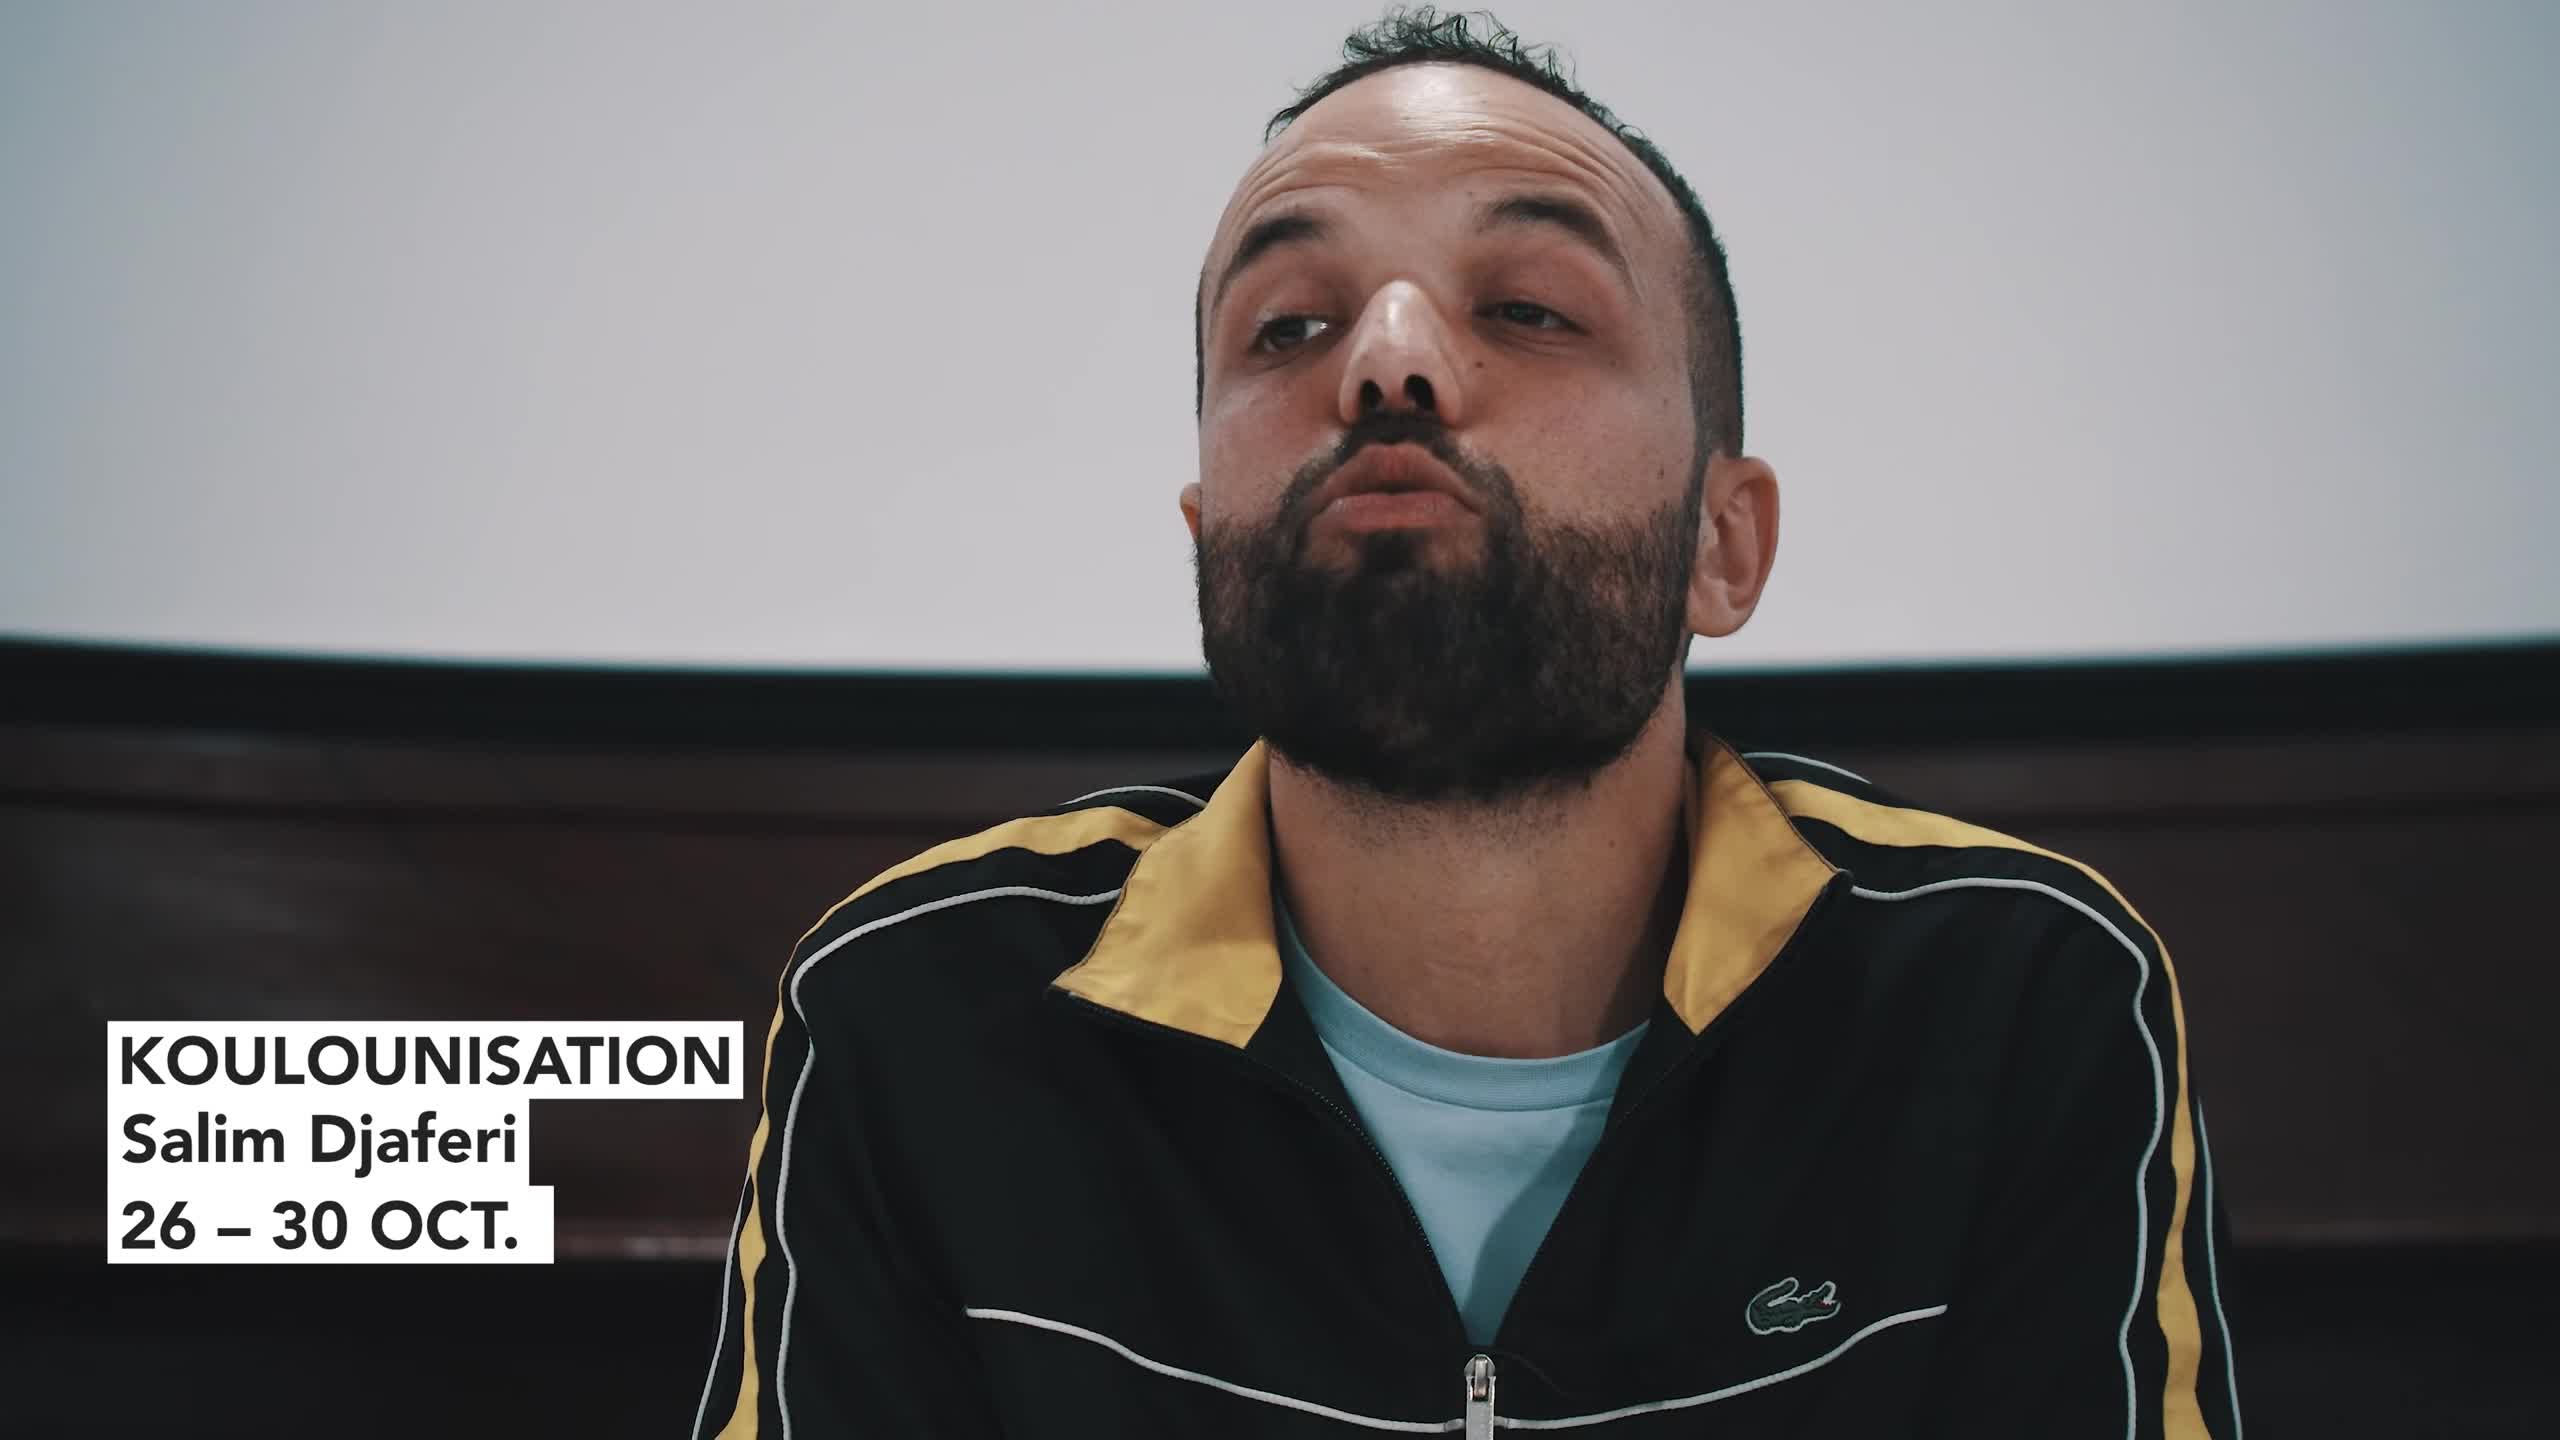 Vidéo "Koulounisation" - Présentation par Salim Djaferi